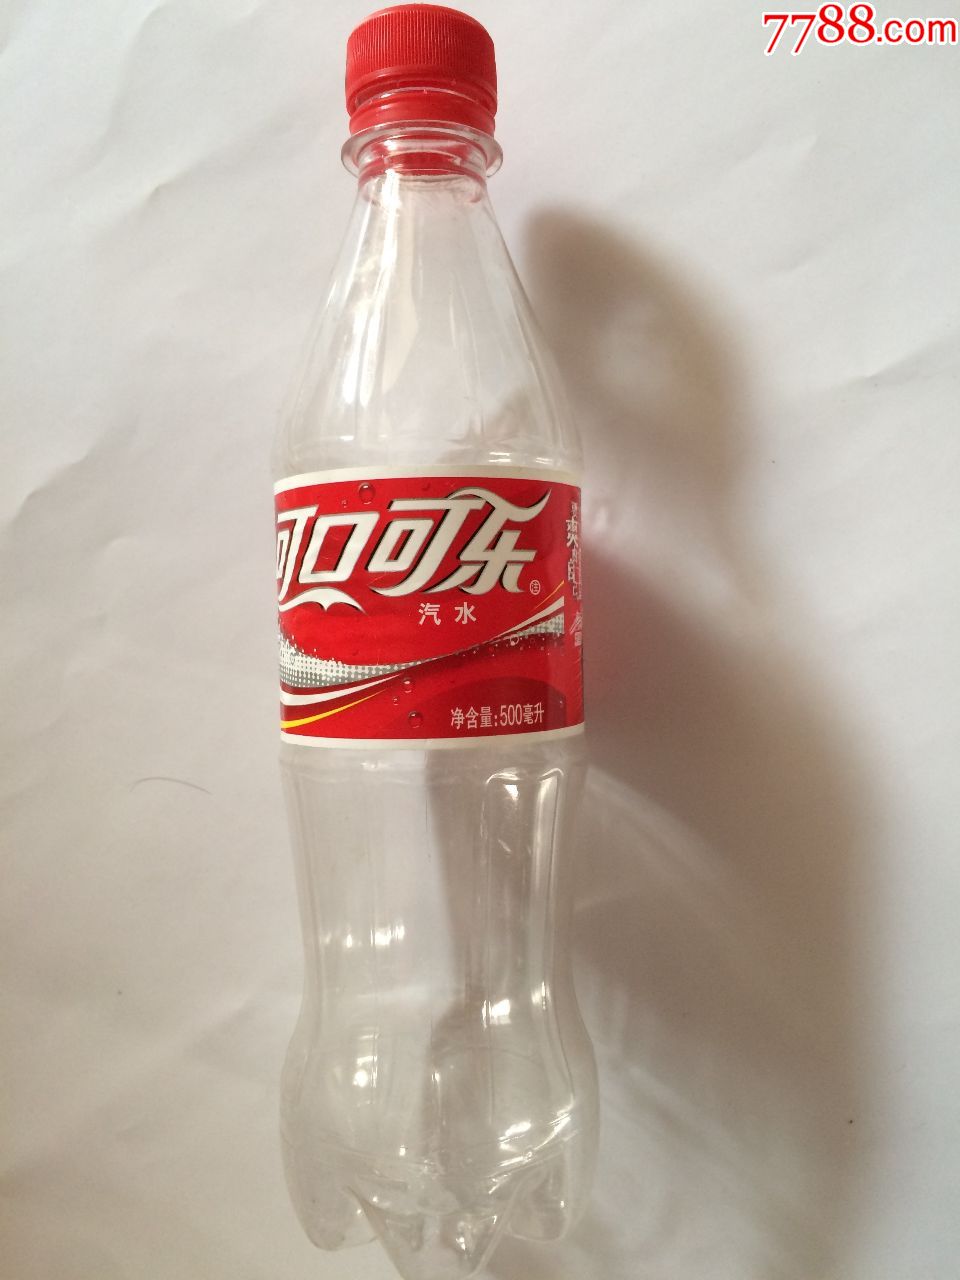 饮料瓶,可乐/碳酸饮料瓶,21世纪初,塑料,完整瓶子【收藏小木屋】